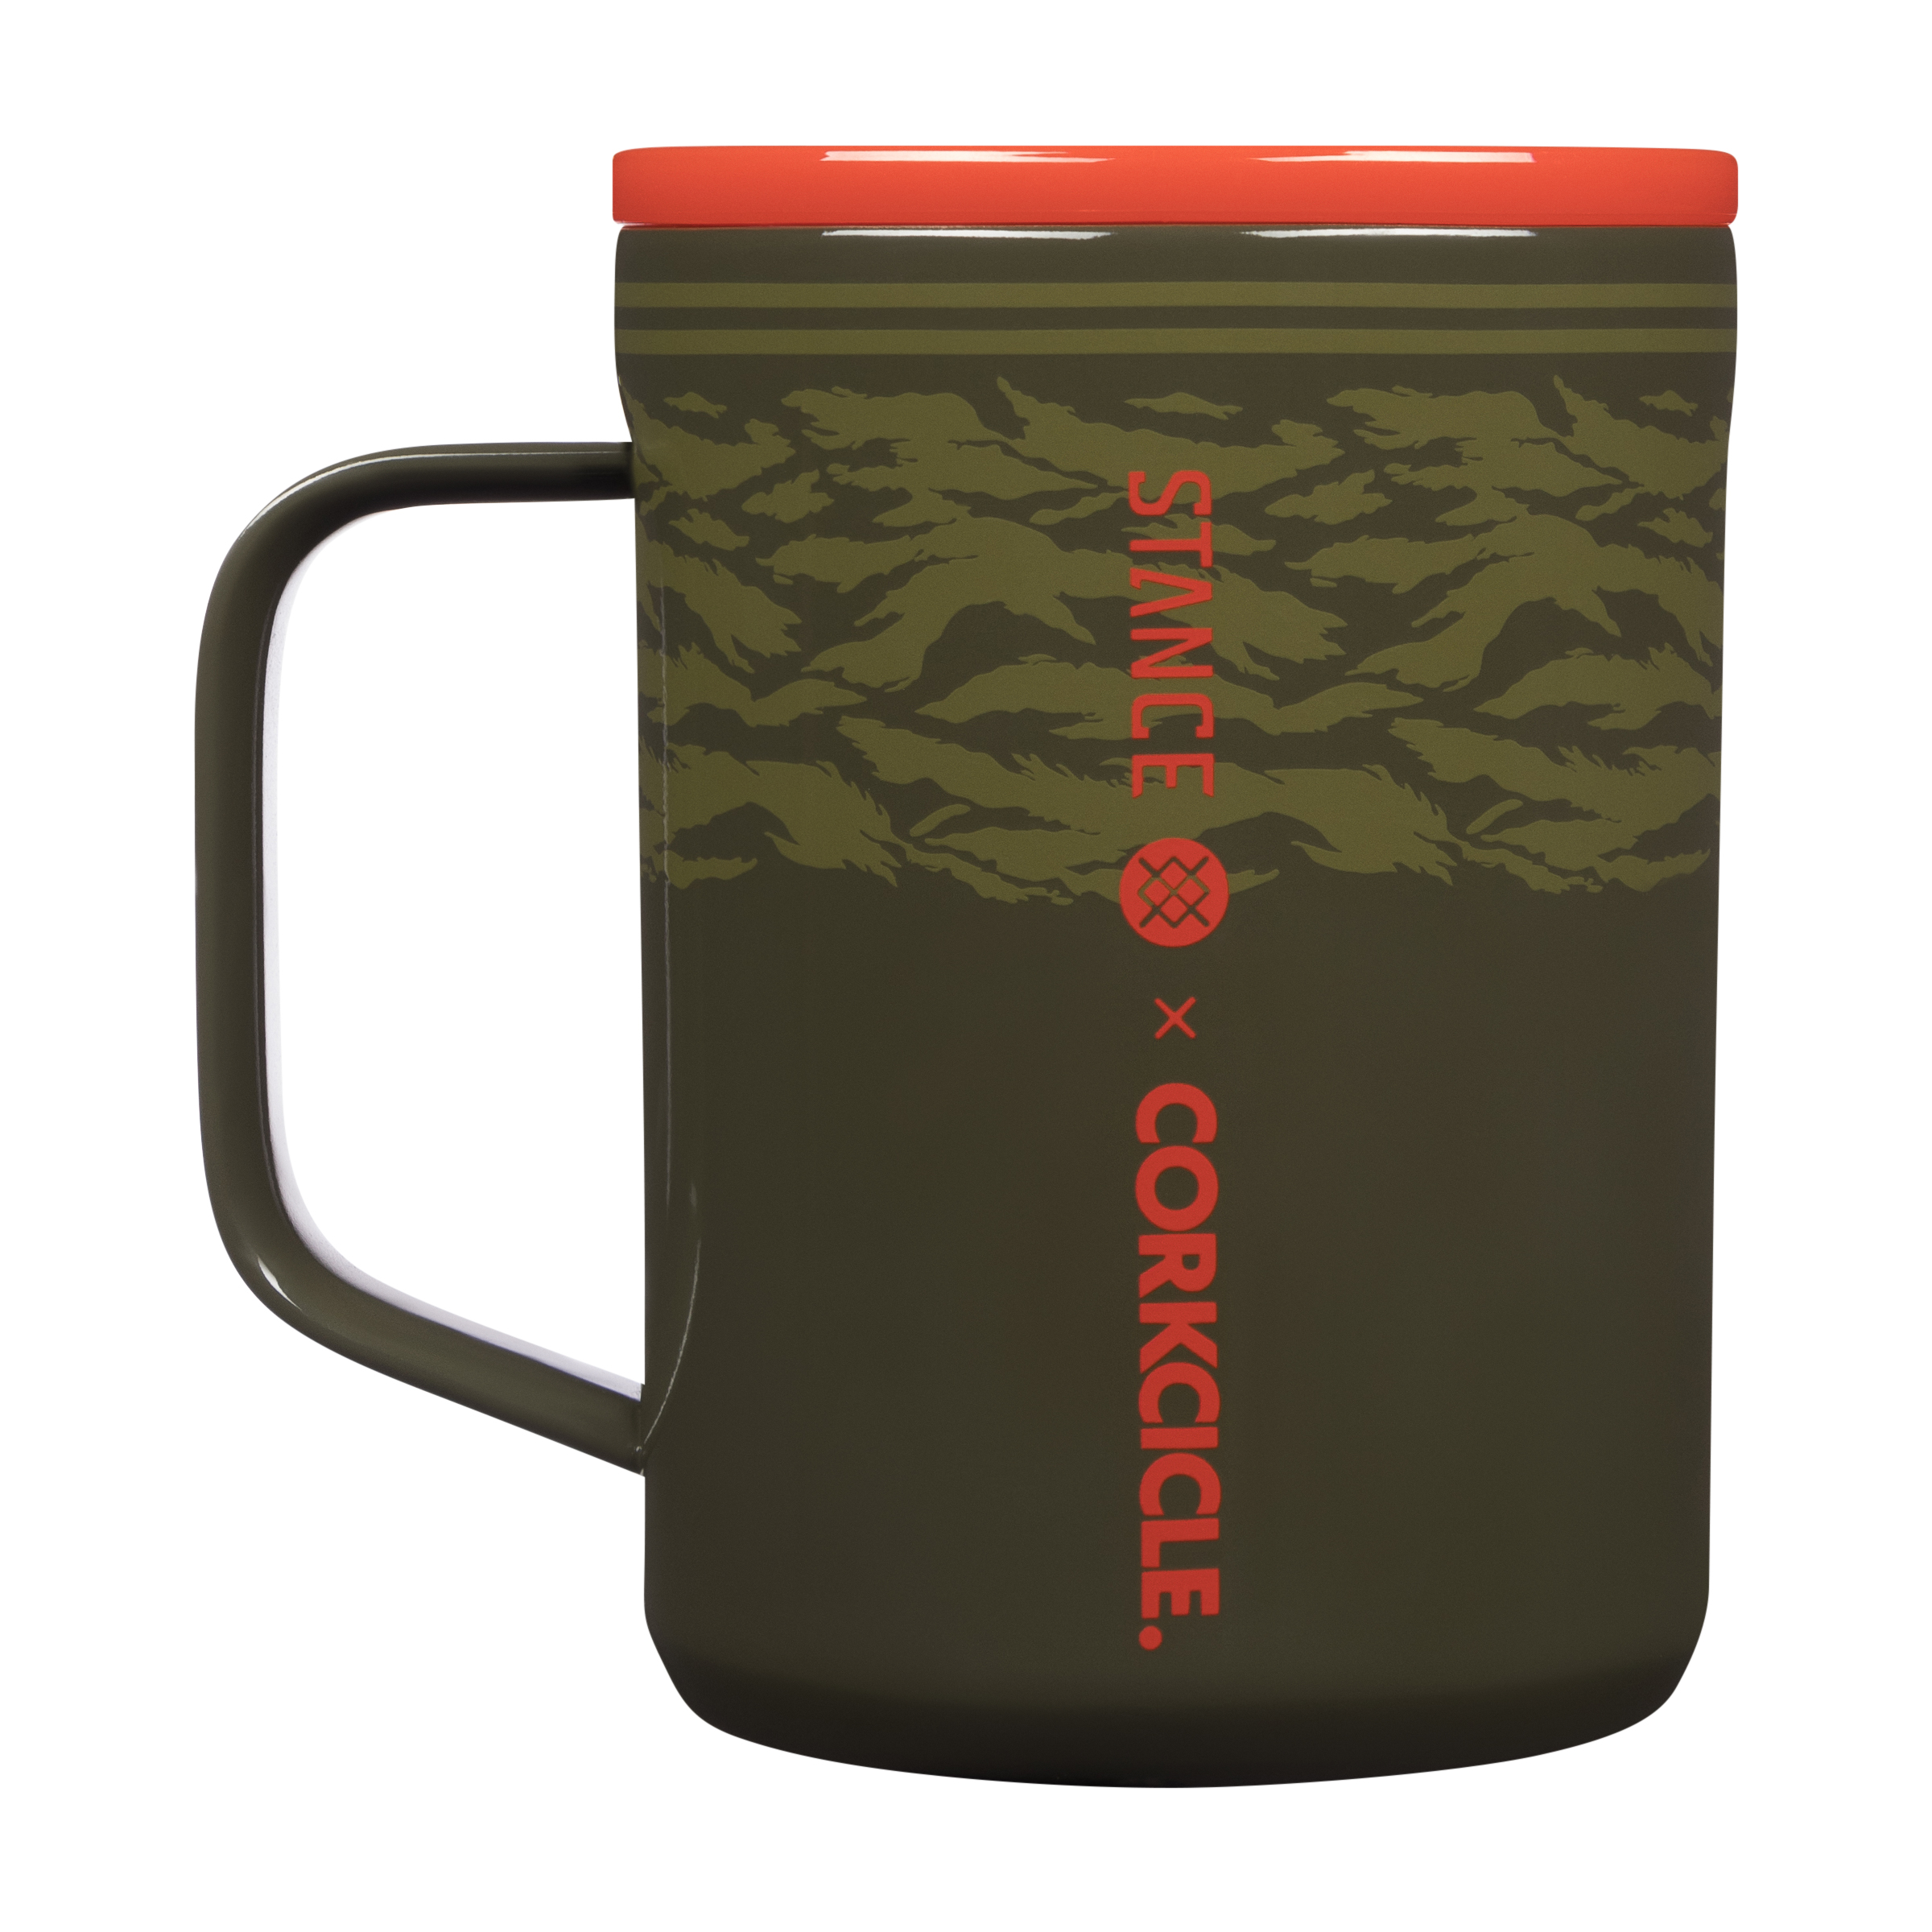 Stance|Corkcicle Warbird Coffee Mug 16 oz|Green|OS